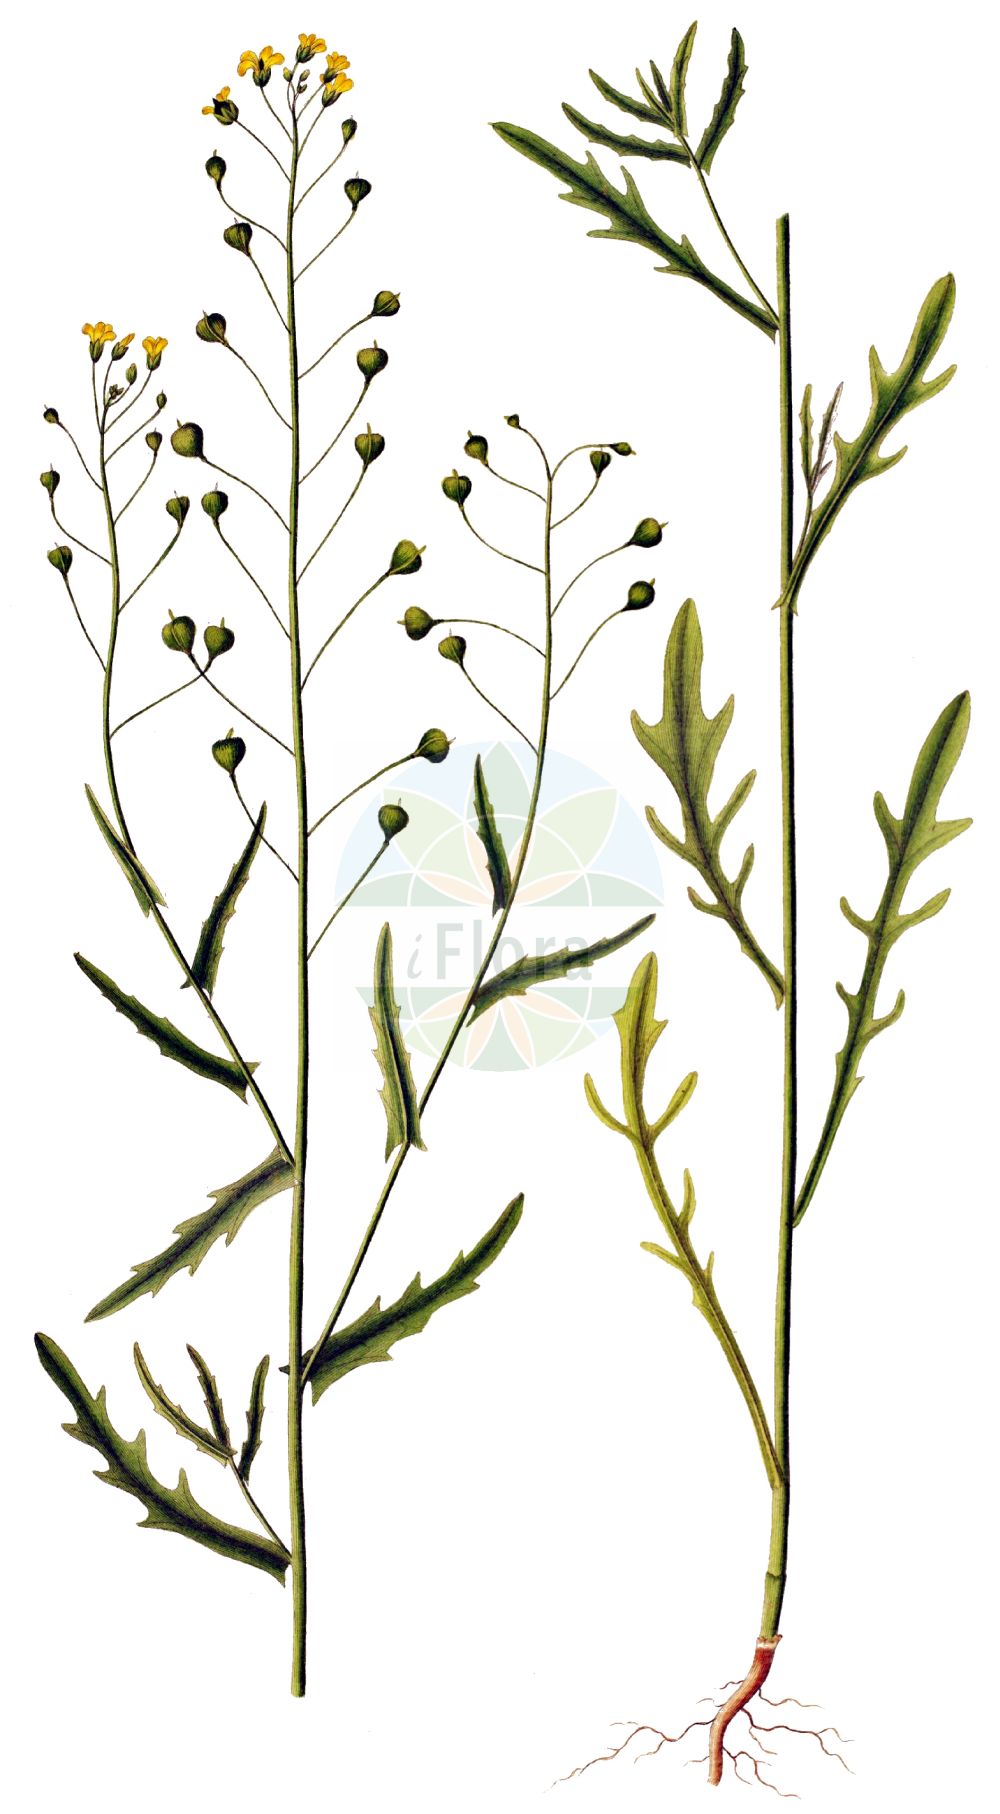 Historische Abbildung von Camelina alyssum (Gezähnter Leindotter - Flat-seed False Flax). Das Bild zeigt Blatt, Bluete, Frucht und Same. ---- Historical Drawing of Camelina alyssum (Gezähnter Leindotter - Flat-seed False Flax). The image is showing leaf, flower, fruit and seed.(Camelina alyssum,Gezähnter Leindotter,Flat-seed False Flax,Camelina alyssum,Camelina dentata,Camelina foetida,Camelina linicola,Camelina macrocarpa,Camelina pinnatifida,Myagrum alyssum,Gezaehnter Leindotter,Flat-seed False Flax,Gold-of-Pleasure,Camelina,Leindotter,False Flax,Brassicaceae,Kreuzblütler,Cabbage family,Blatt,Bluete,Frucht,Same,leaf,flower,fruit,seed,Oeder (1761-1883))